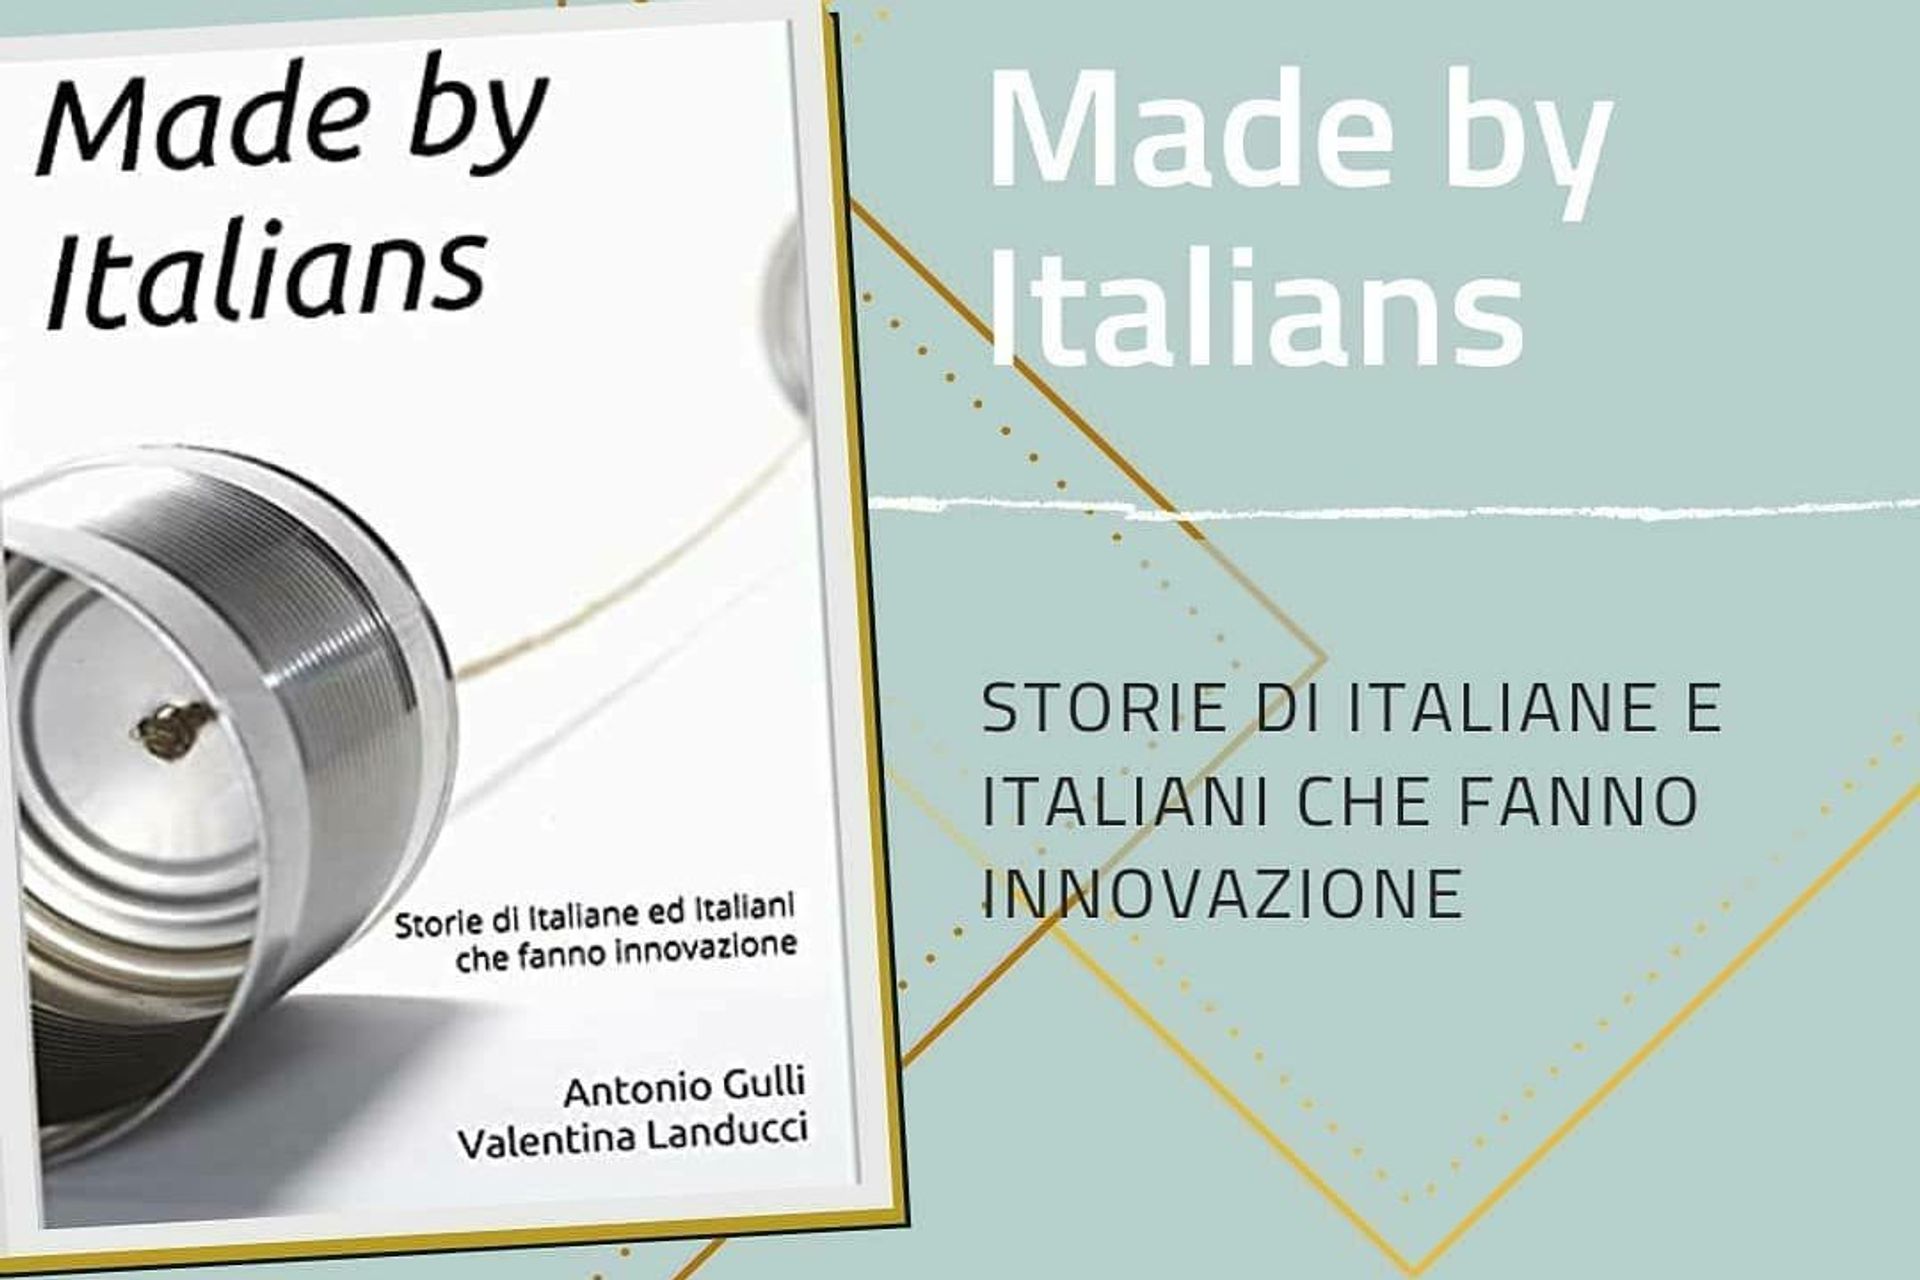 La presentazione del libro “Made by Italians Storie di Italiane ed Italiani che fanno innovazione”